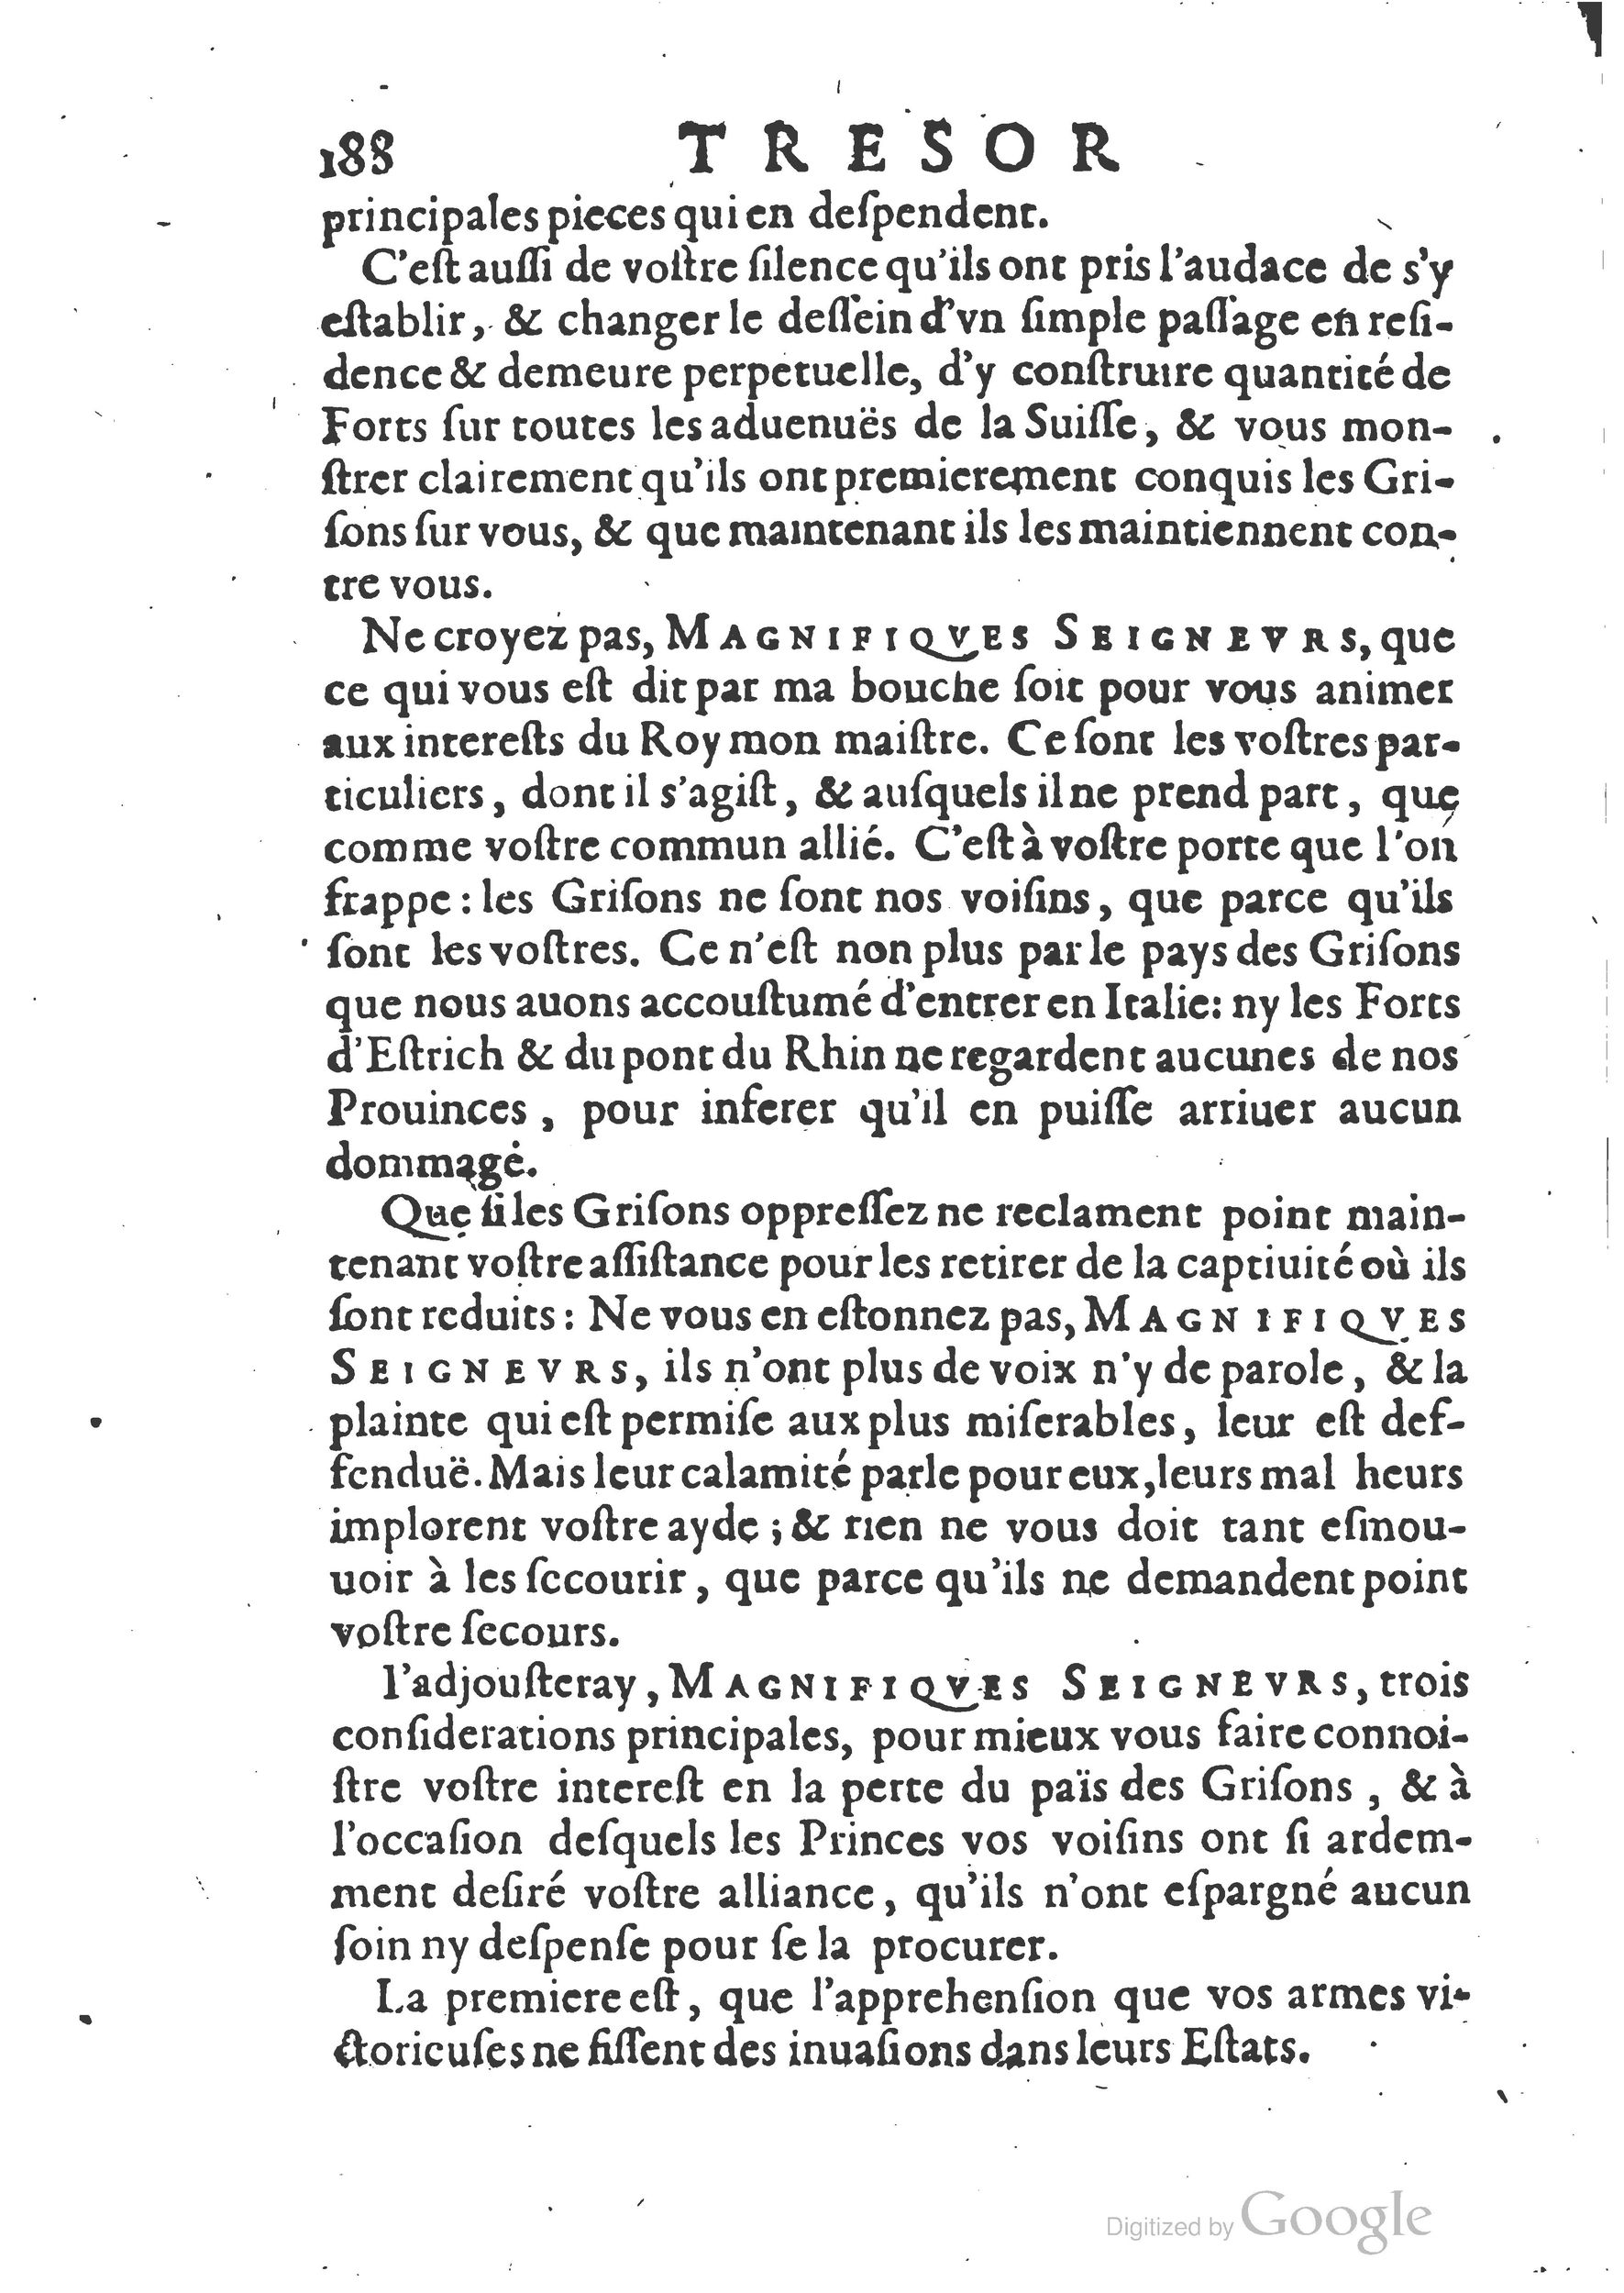 1654 Trésor des harangues, remontrances et oraisons funèbres Robin_BM Lyon_Page_207.jpg